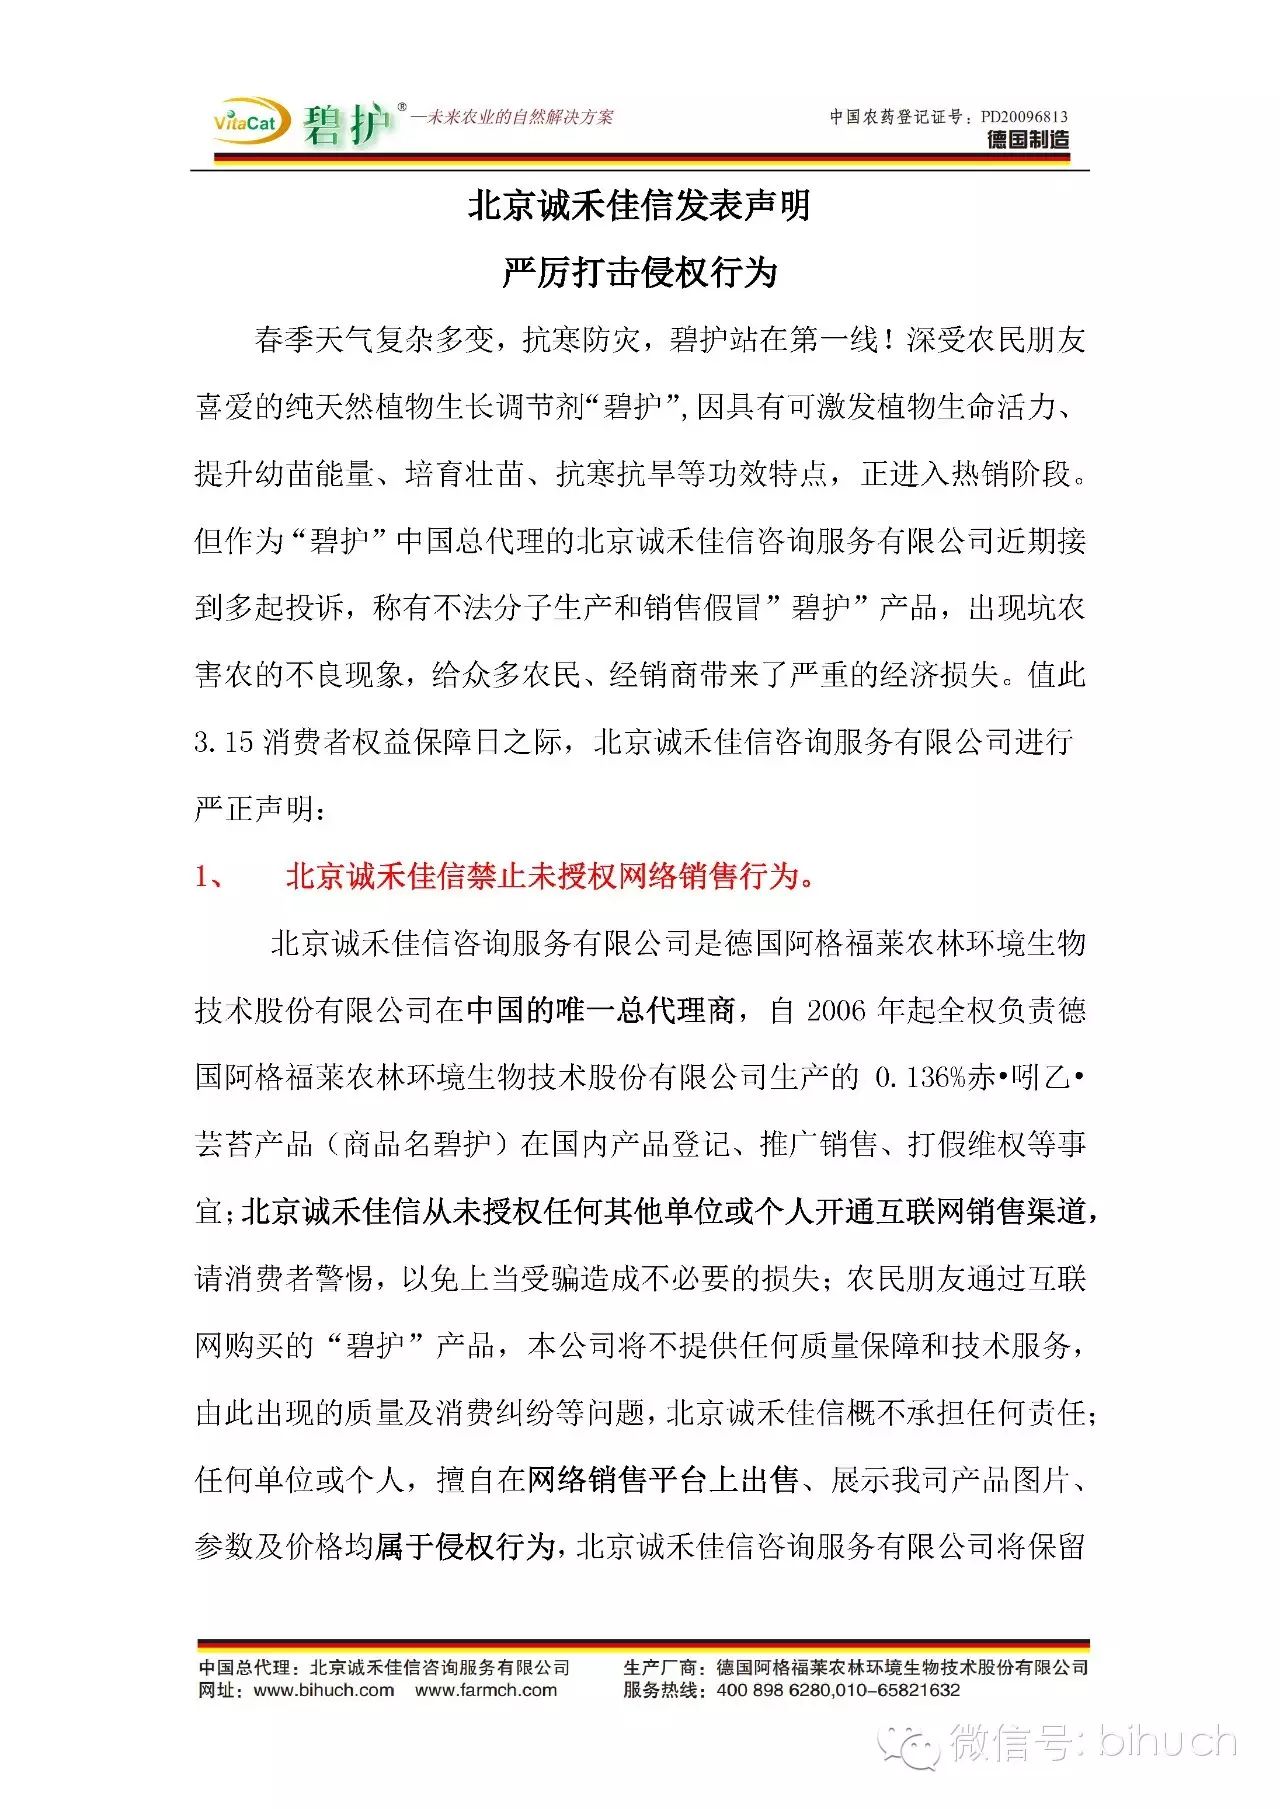 北京诚禾佳信发表声明严厉打击侵权行为